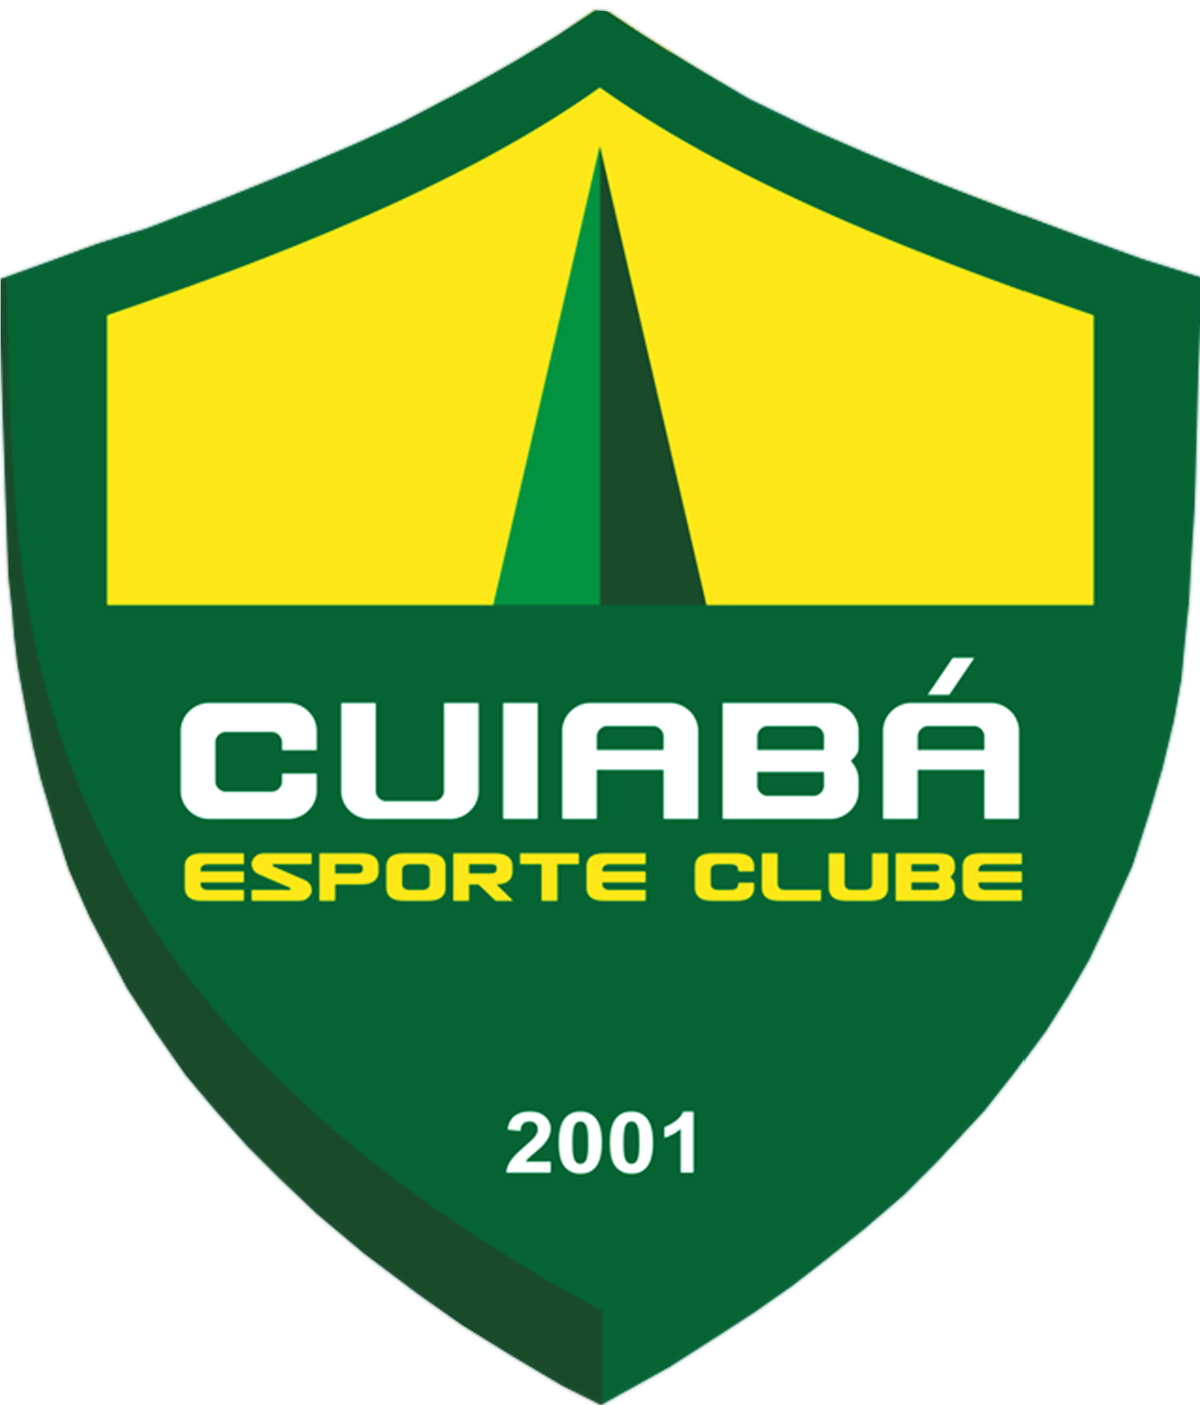 Goiás vs. Cuiabá. Pronóstico: Cuiabá seguirá hundiéndose en su mal momento